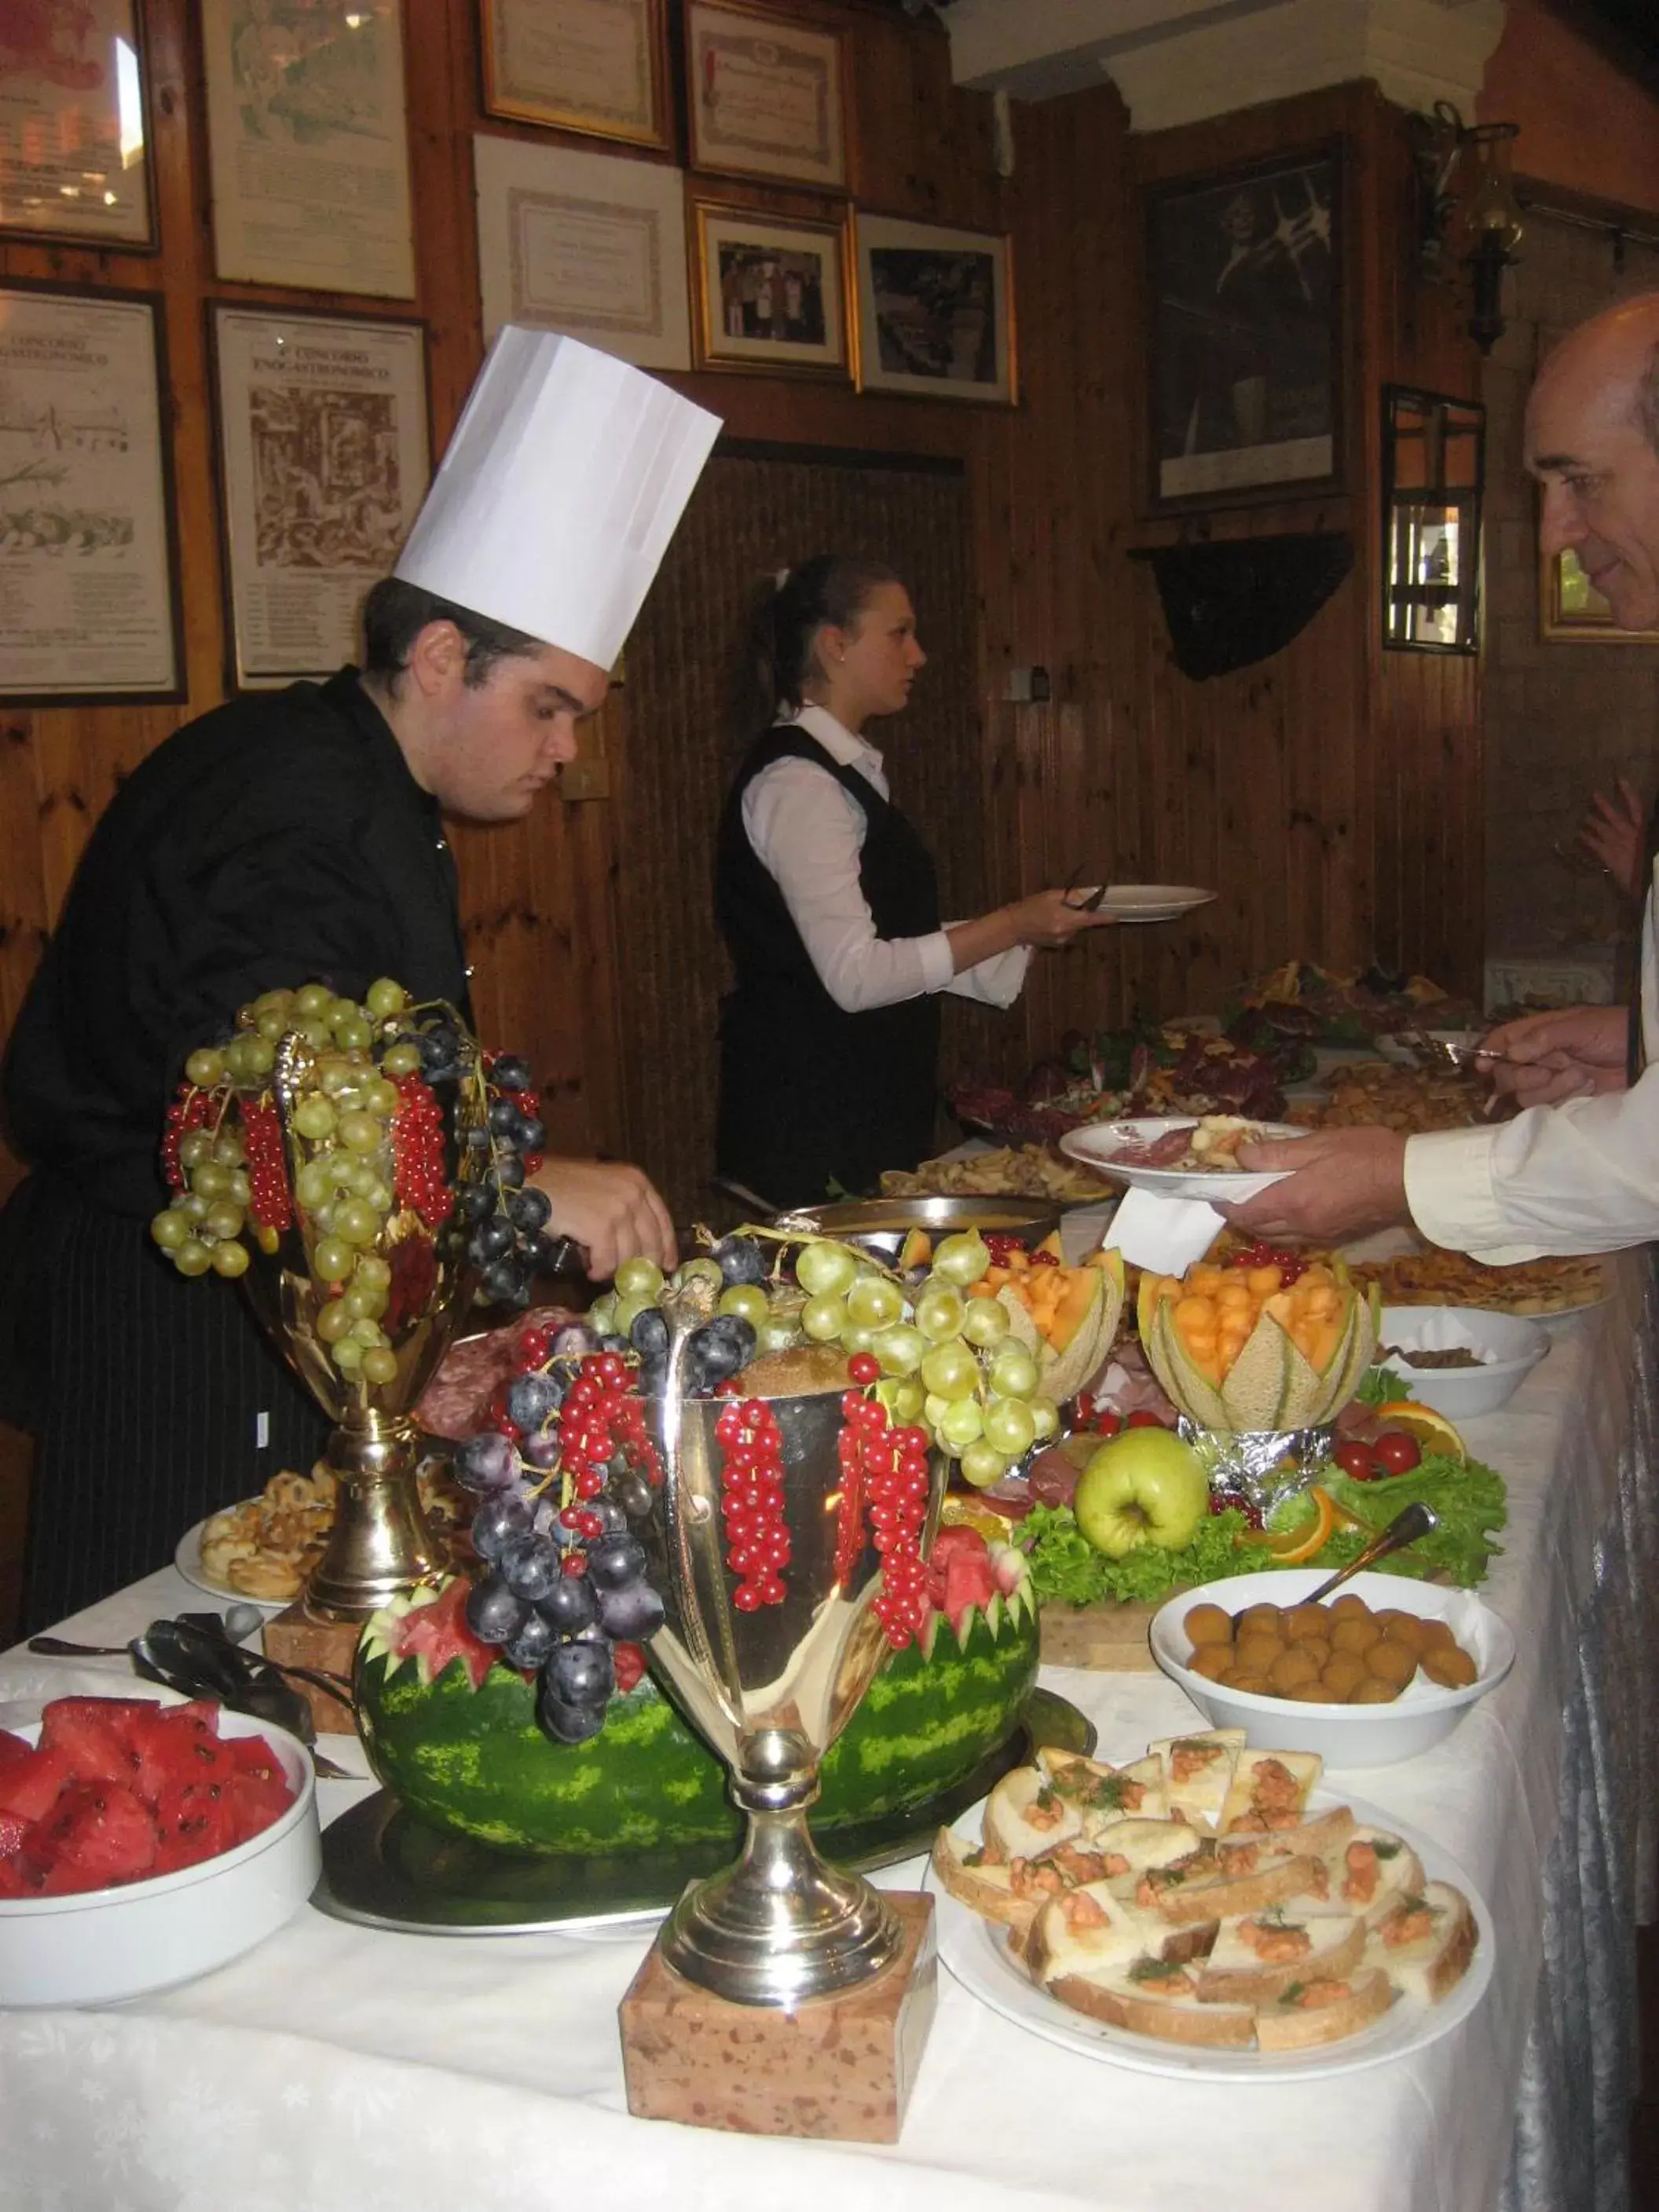 Food and drinks in Hotel Pizzeria Ristorante "Al Leone"